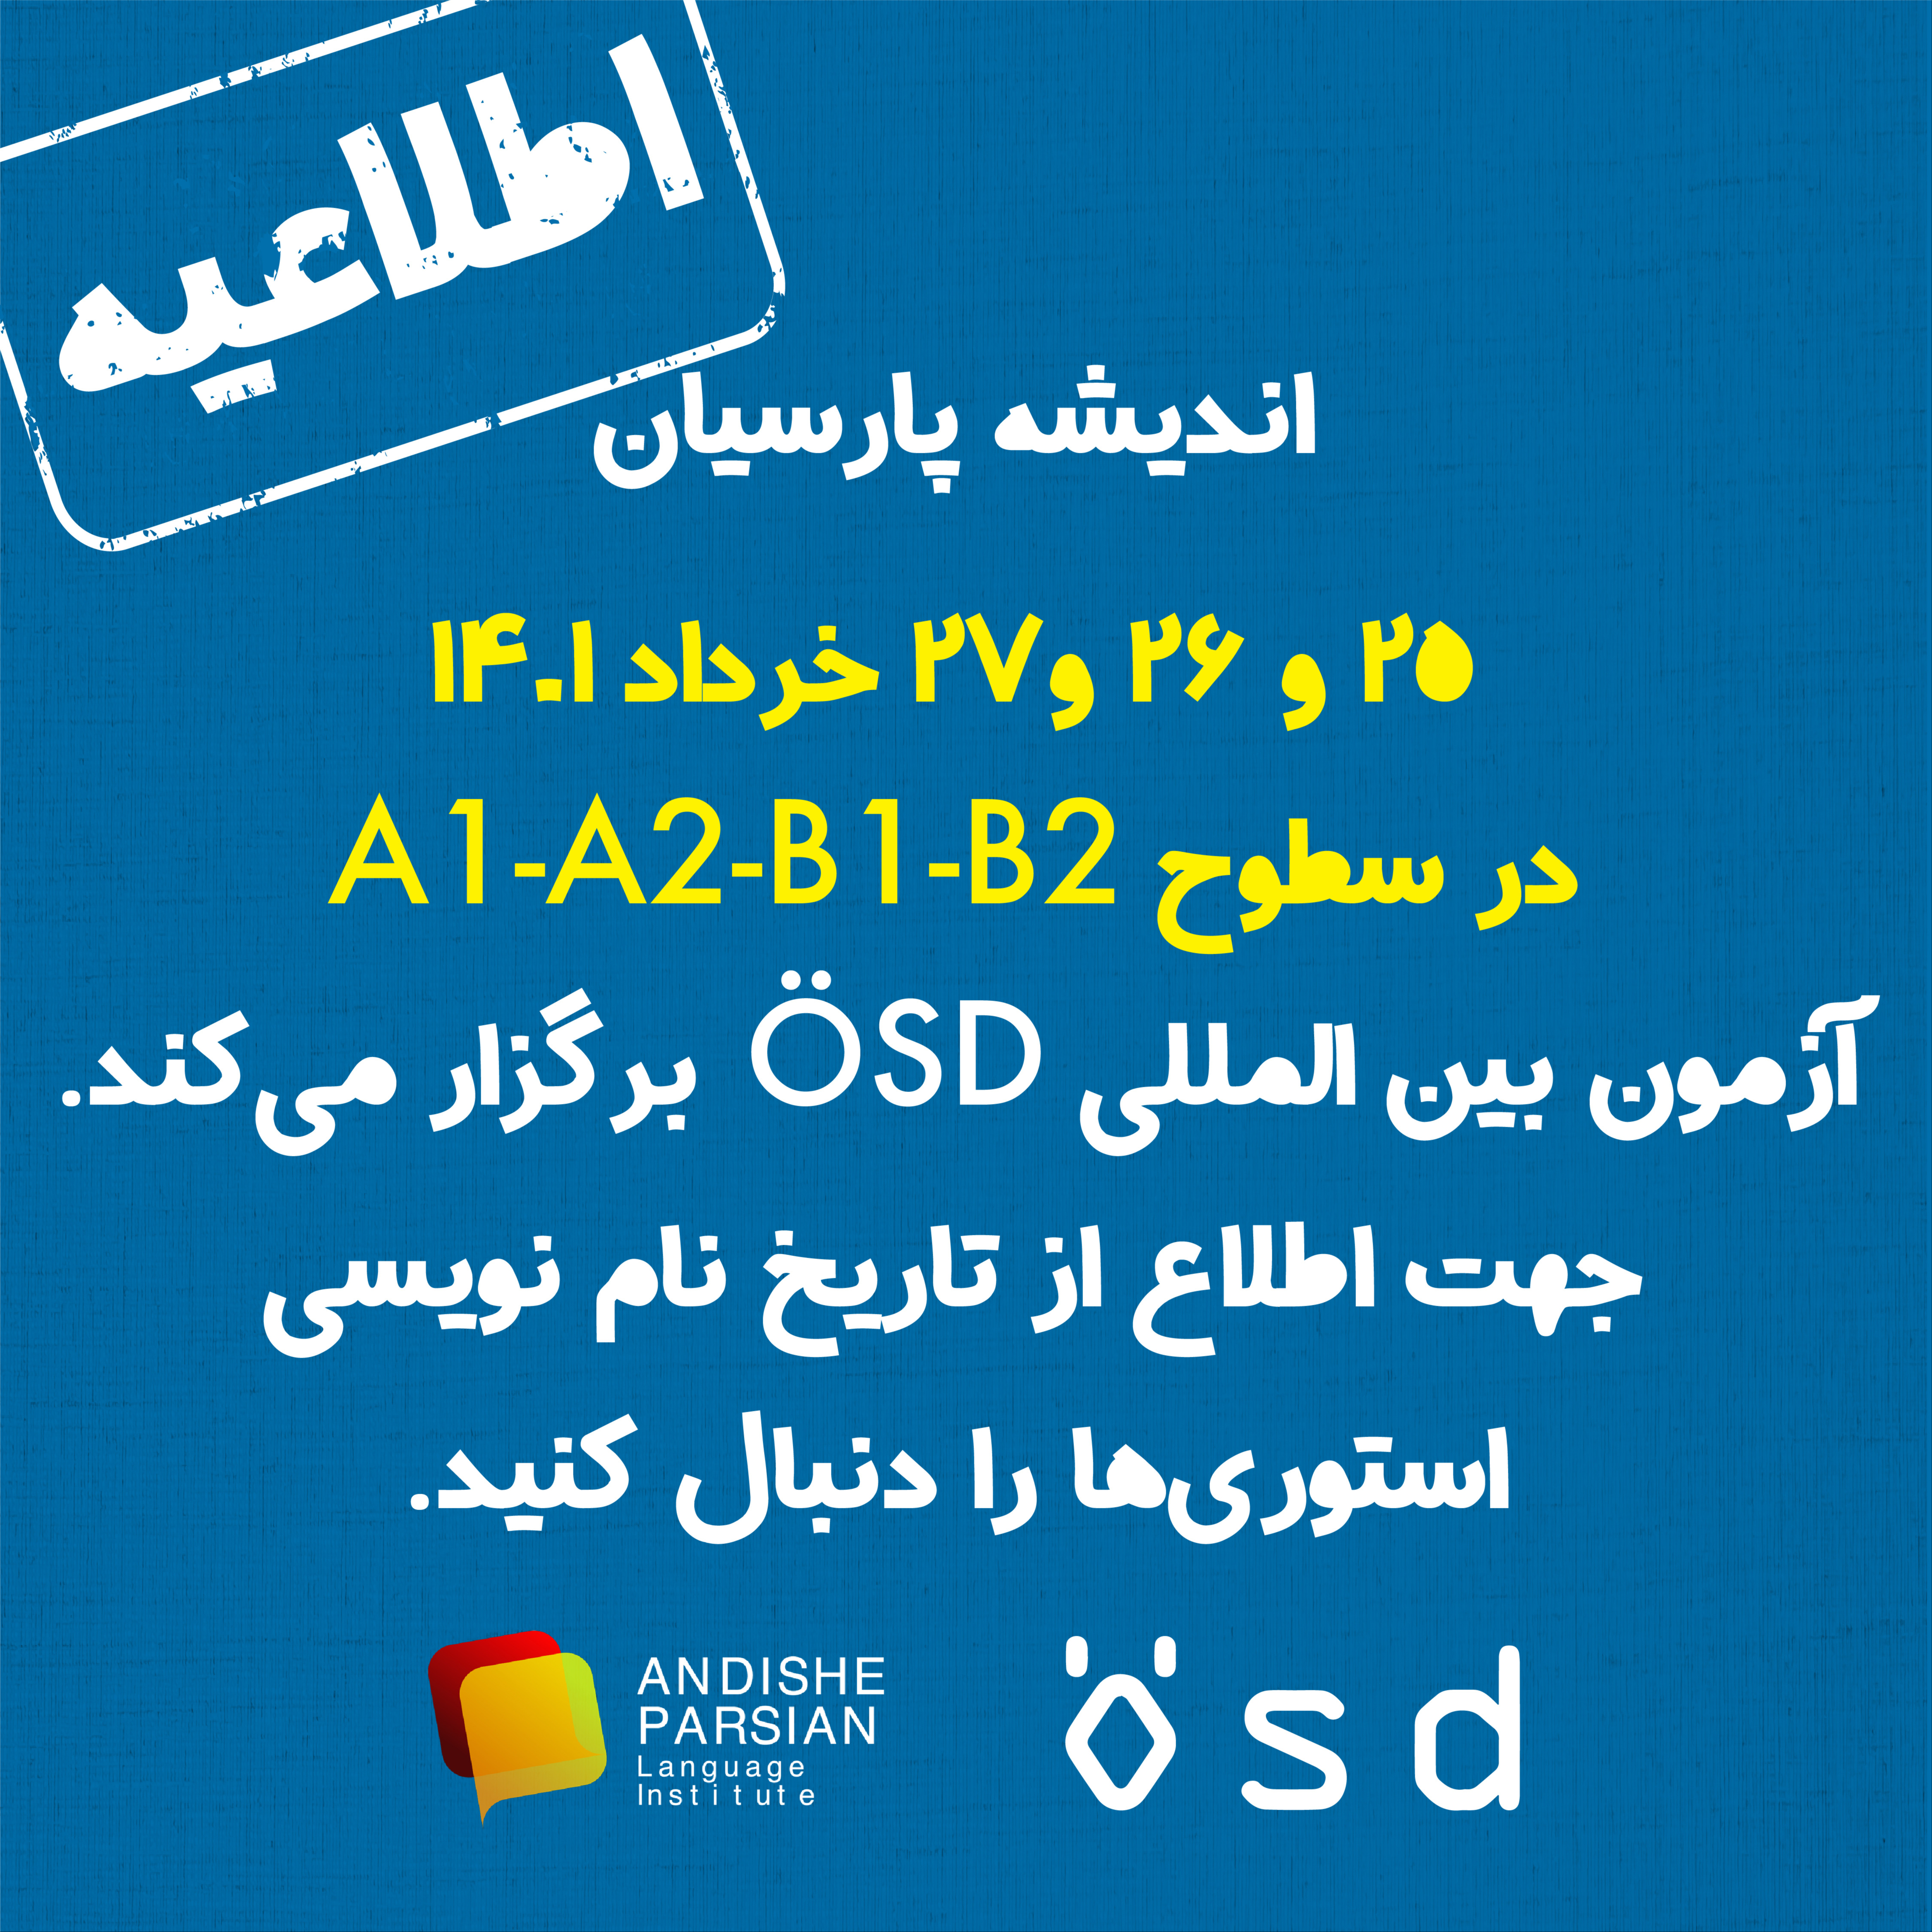 برگزاری آزمون ÖSD در خرداد ماه ۱۴۰۱ در اندیشه پارسیان